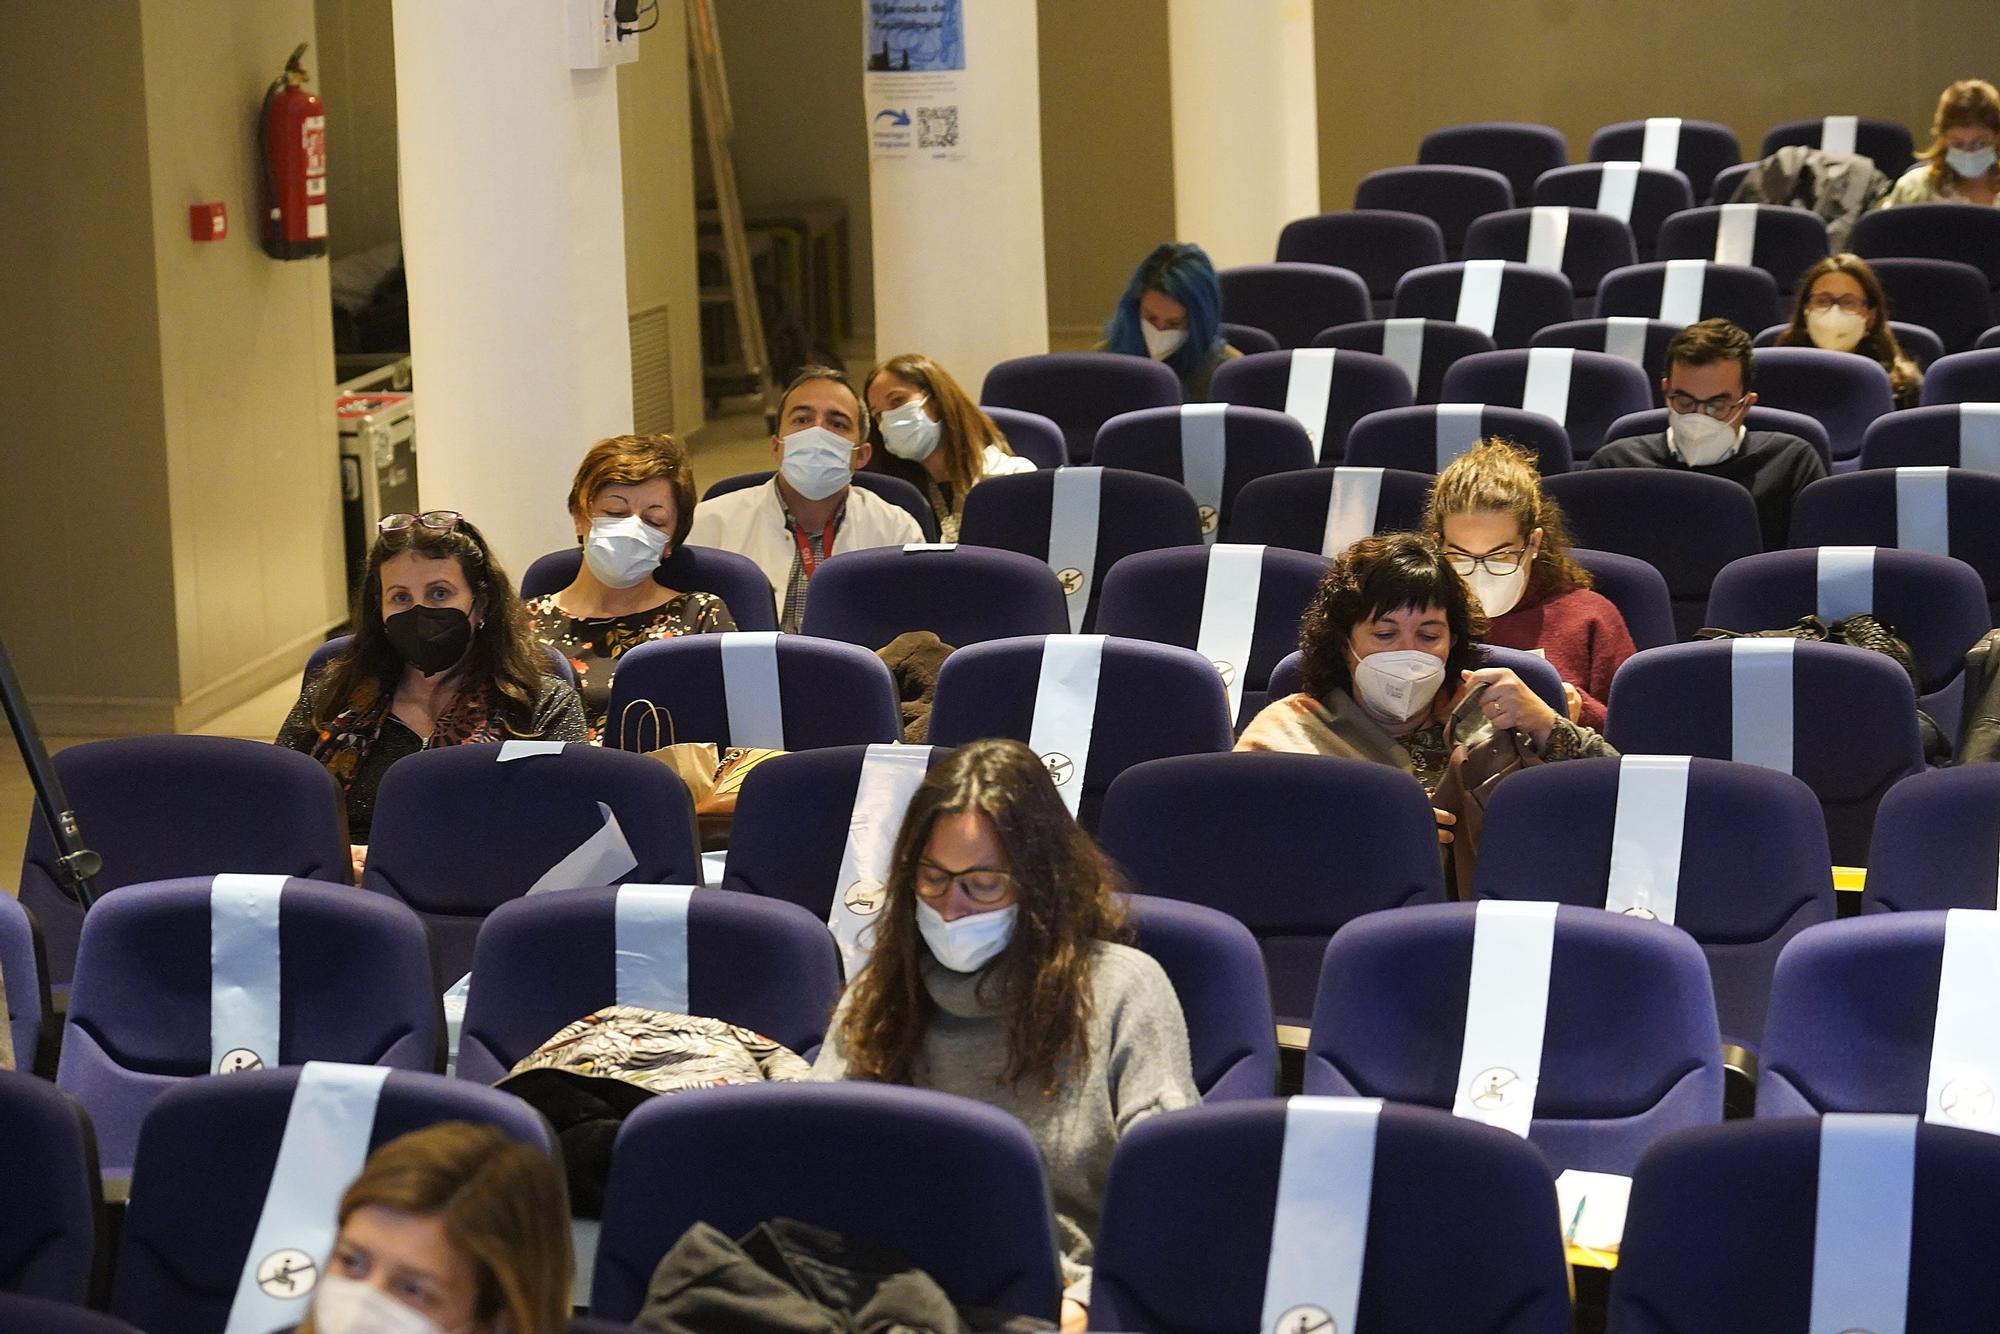 Totes les morts pel virus a Girona en l’última onada eren pacients no vacunats